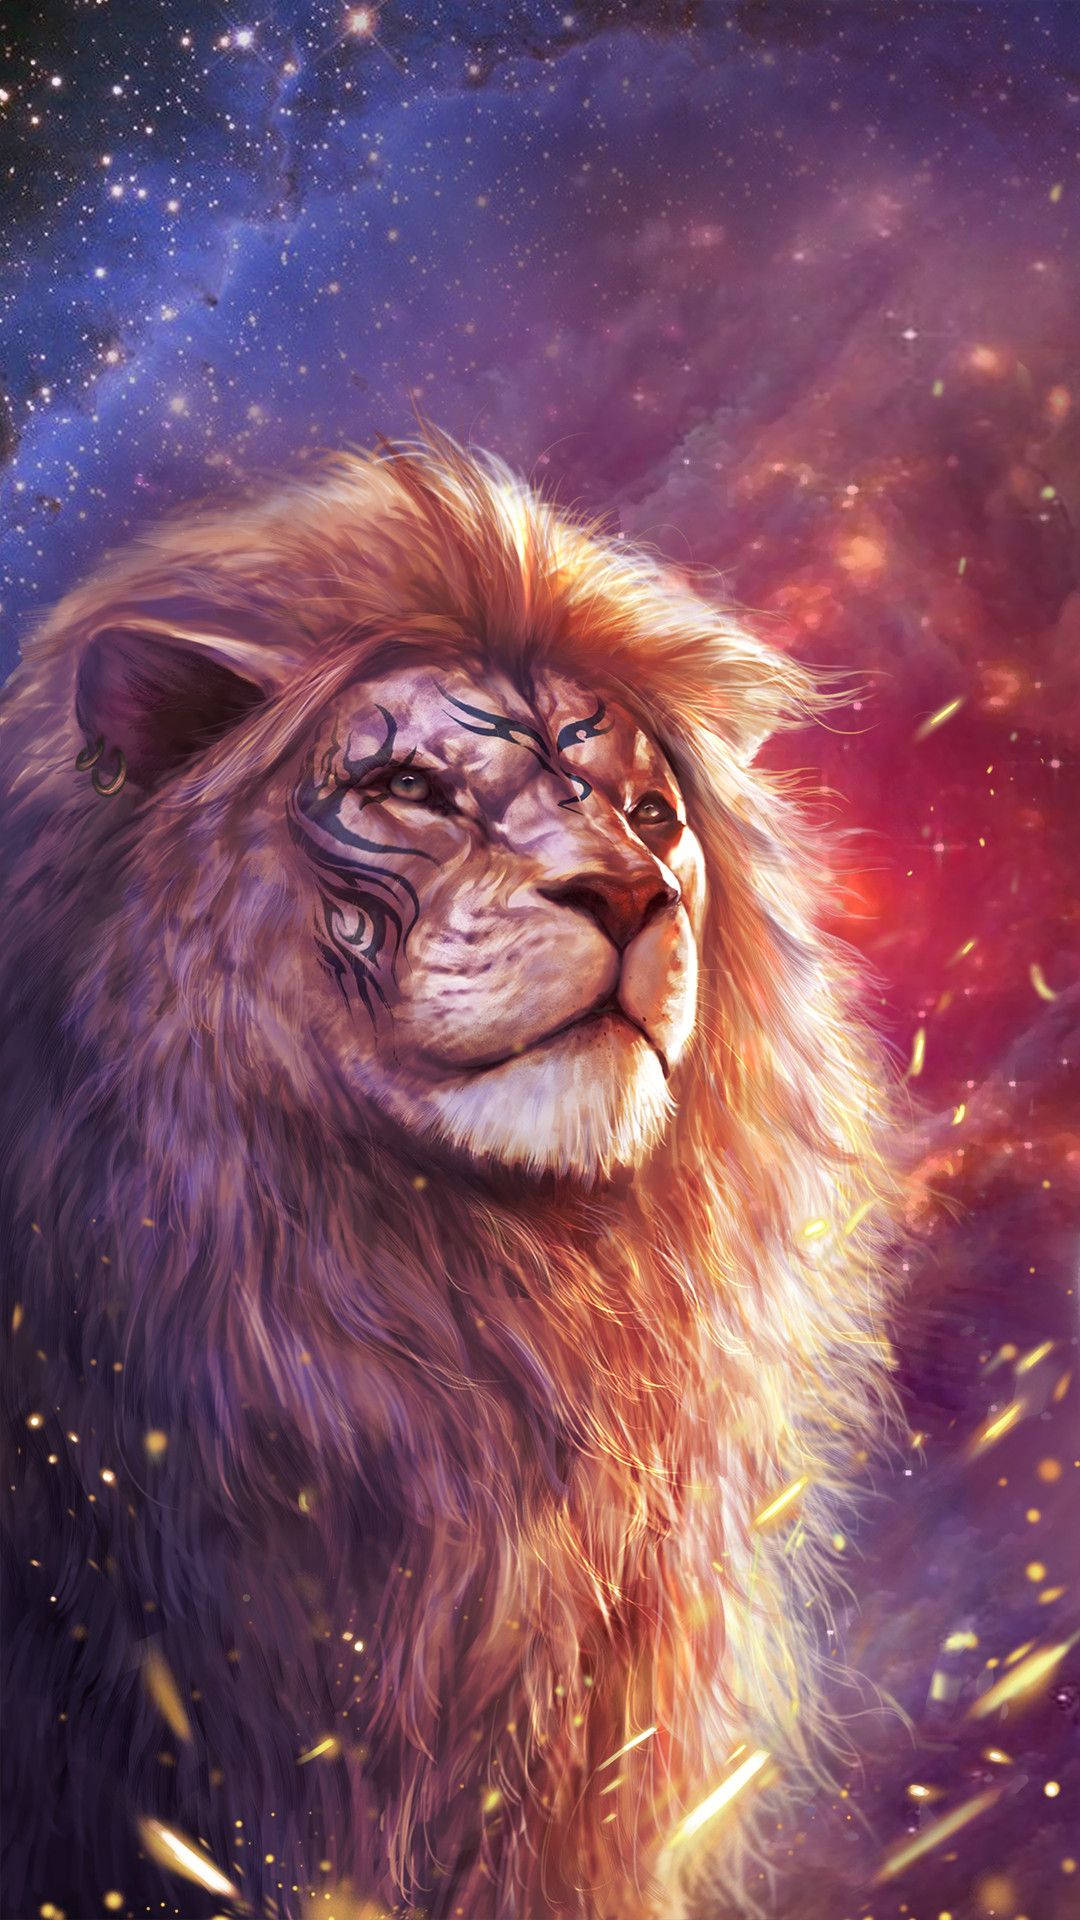 Cool Lion Digital Art Wallpaper